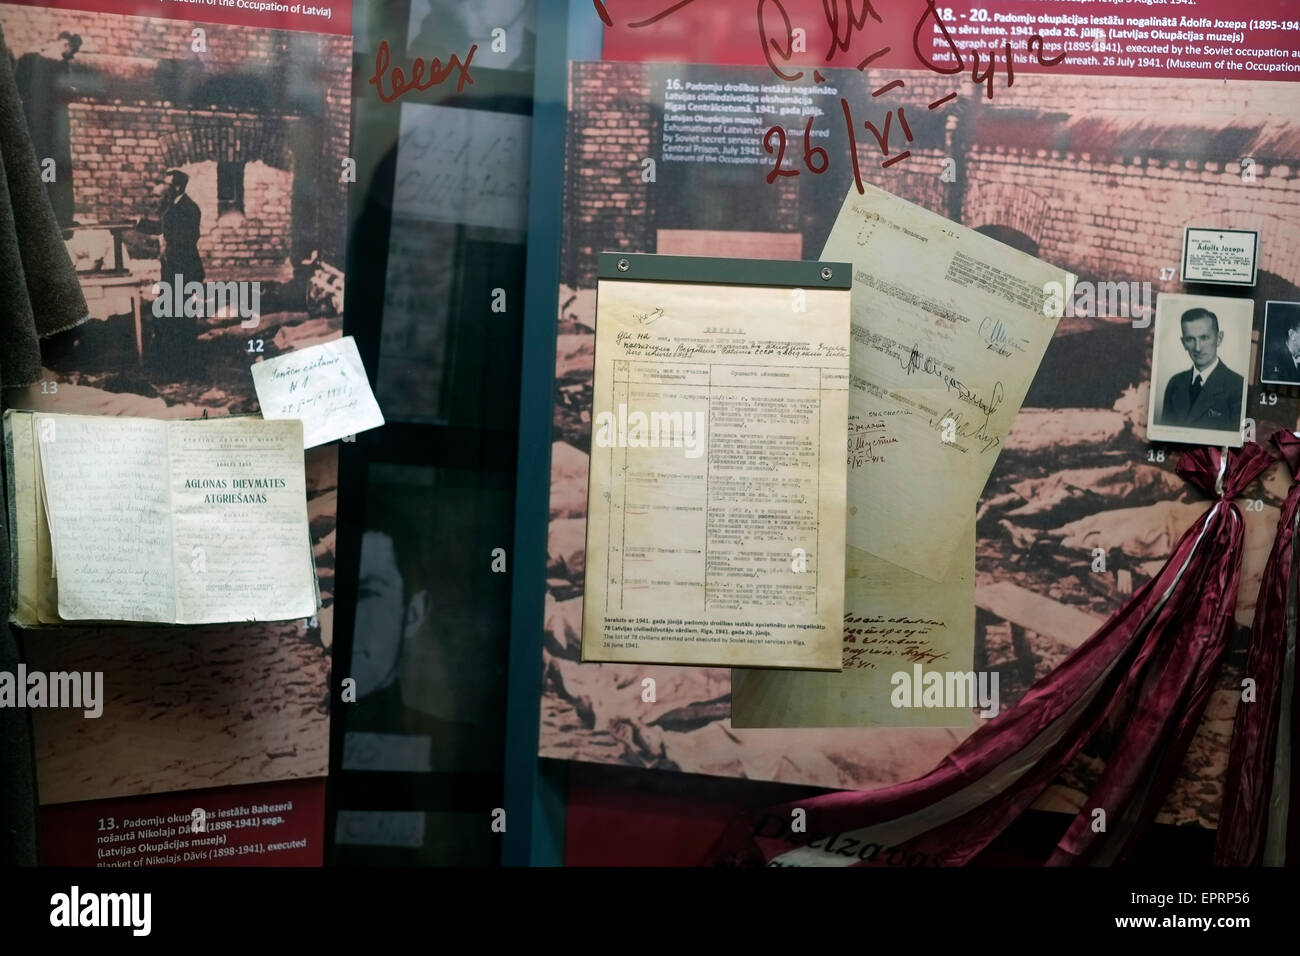 Documents affichés au Musée de l'occupation de la Lettonie un établissement d'enseignement historique créé en 1993 à exposer des artefacts, des documents d'archives, et d'éduquer le public au sujet de la période de 51 ans dans le 20e siècle, lorsque la Lettonie a été successivement occupé par l'URSS en 1940-1941, puis par l'Allemagne nazie en 1941-1944, puis de nouveau par l'URSS en 1944-1991 situé dans la ville de Riga, capitale de la République de Lettonie Banque D'Images